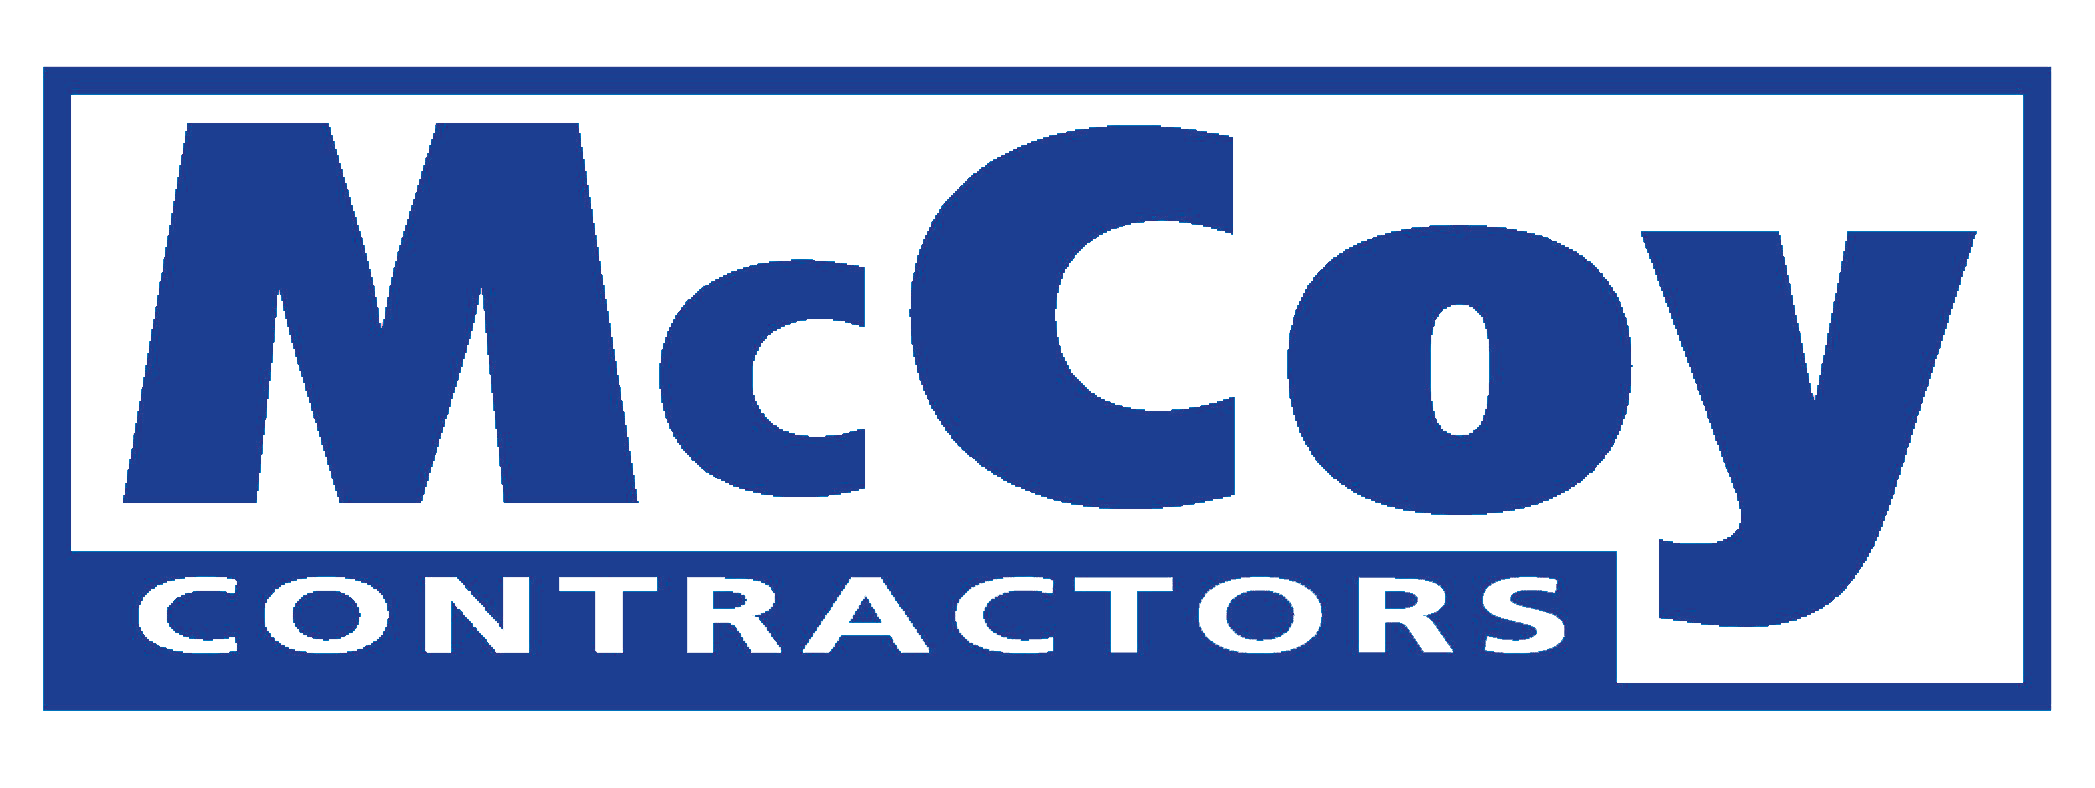 McCoy Contractors